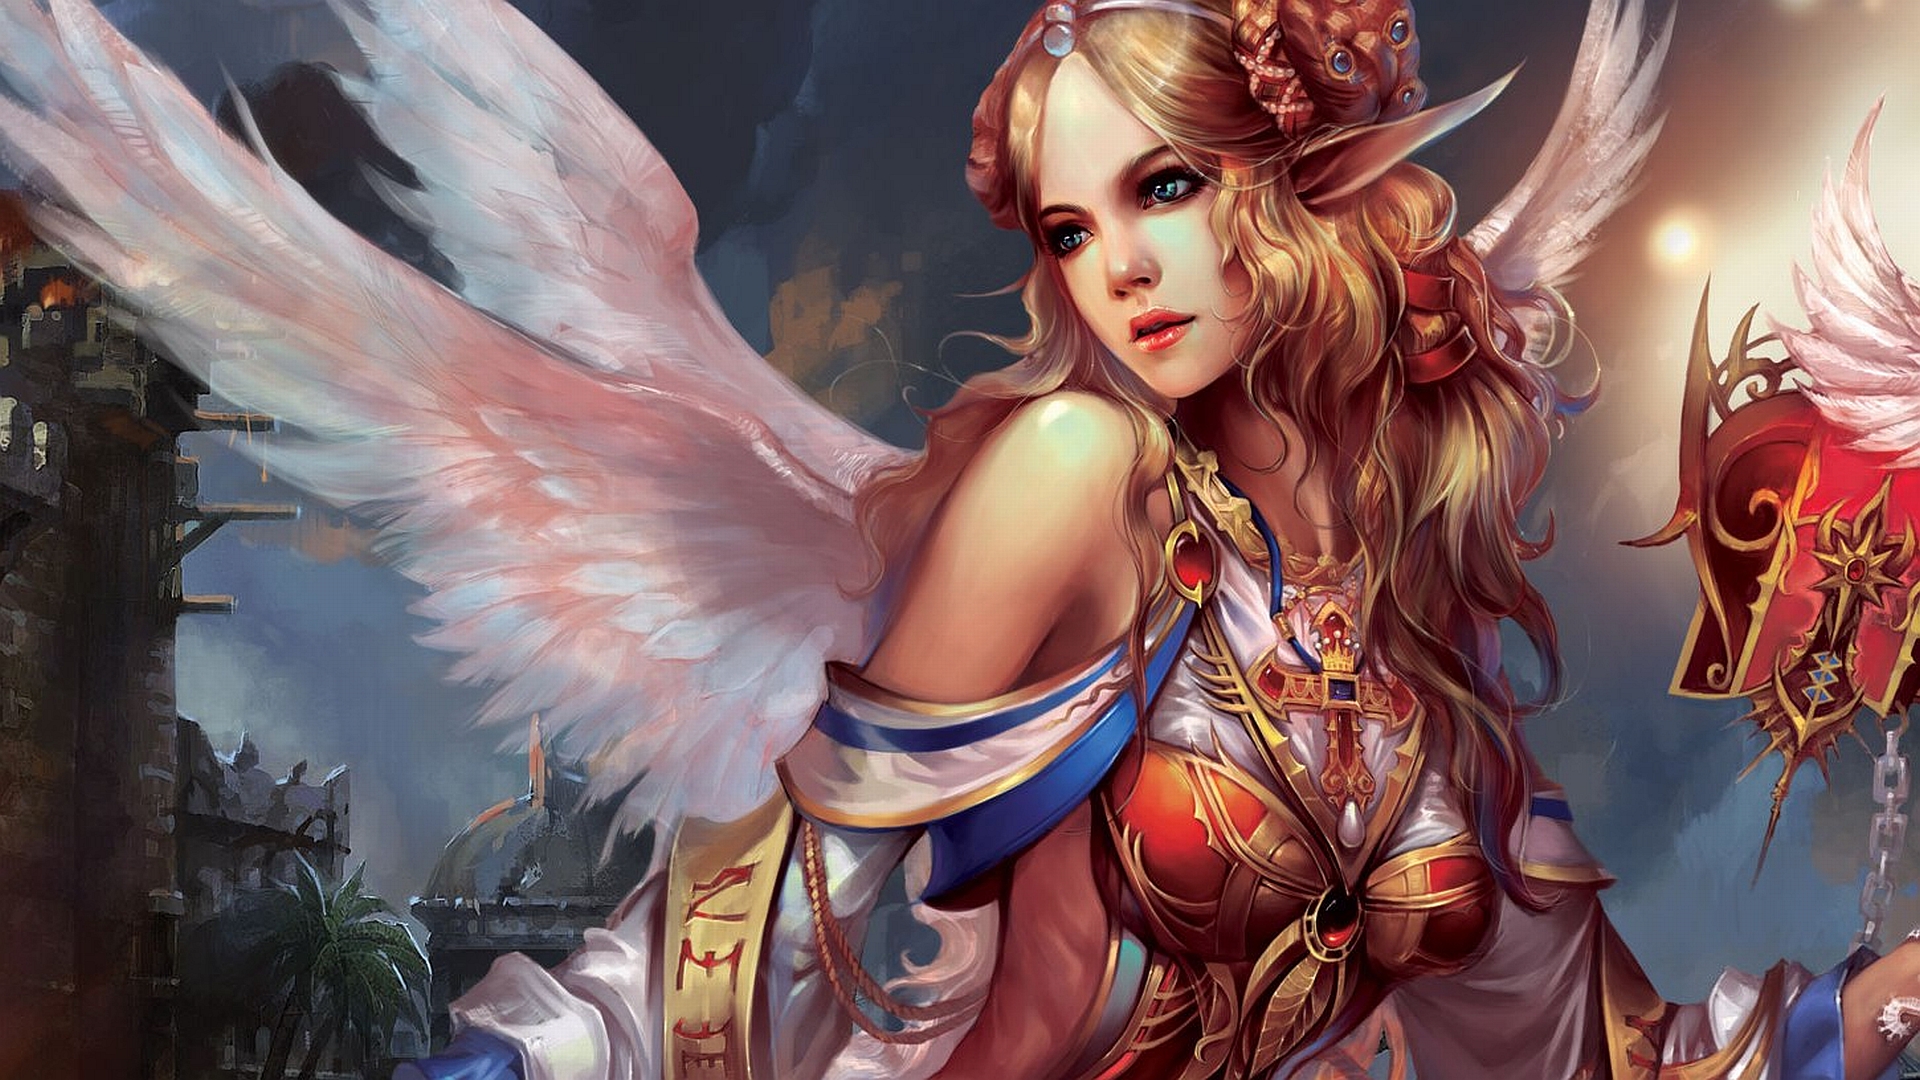 elf, video game, forsaken world, angel, blonde, fantasy, warrior, wings